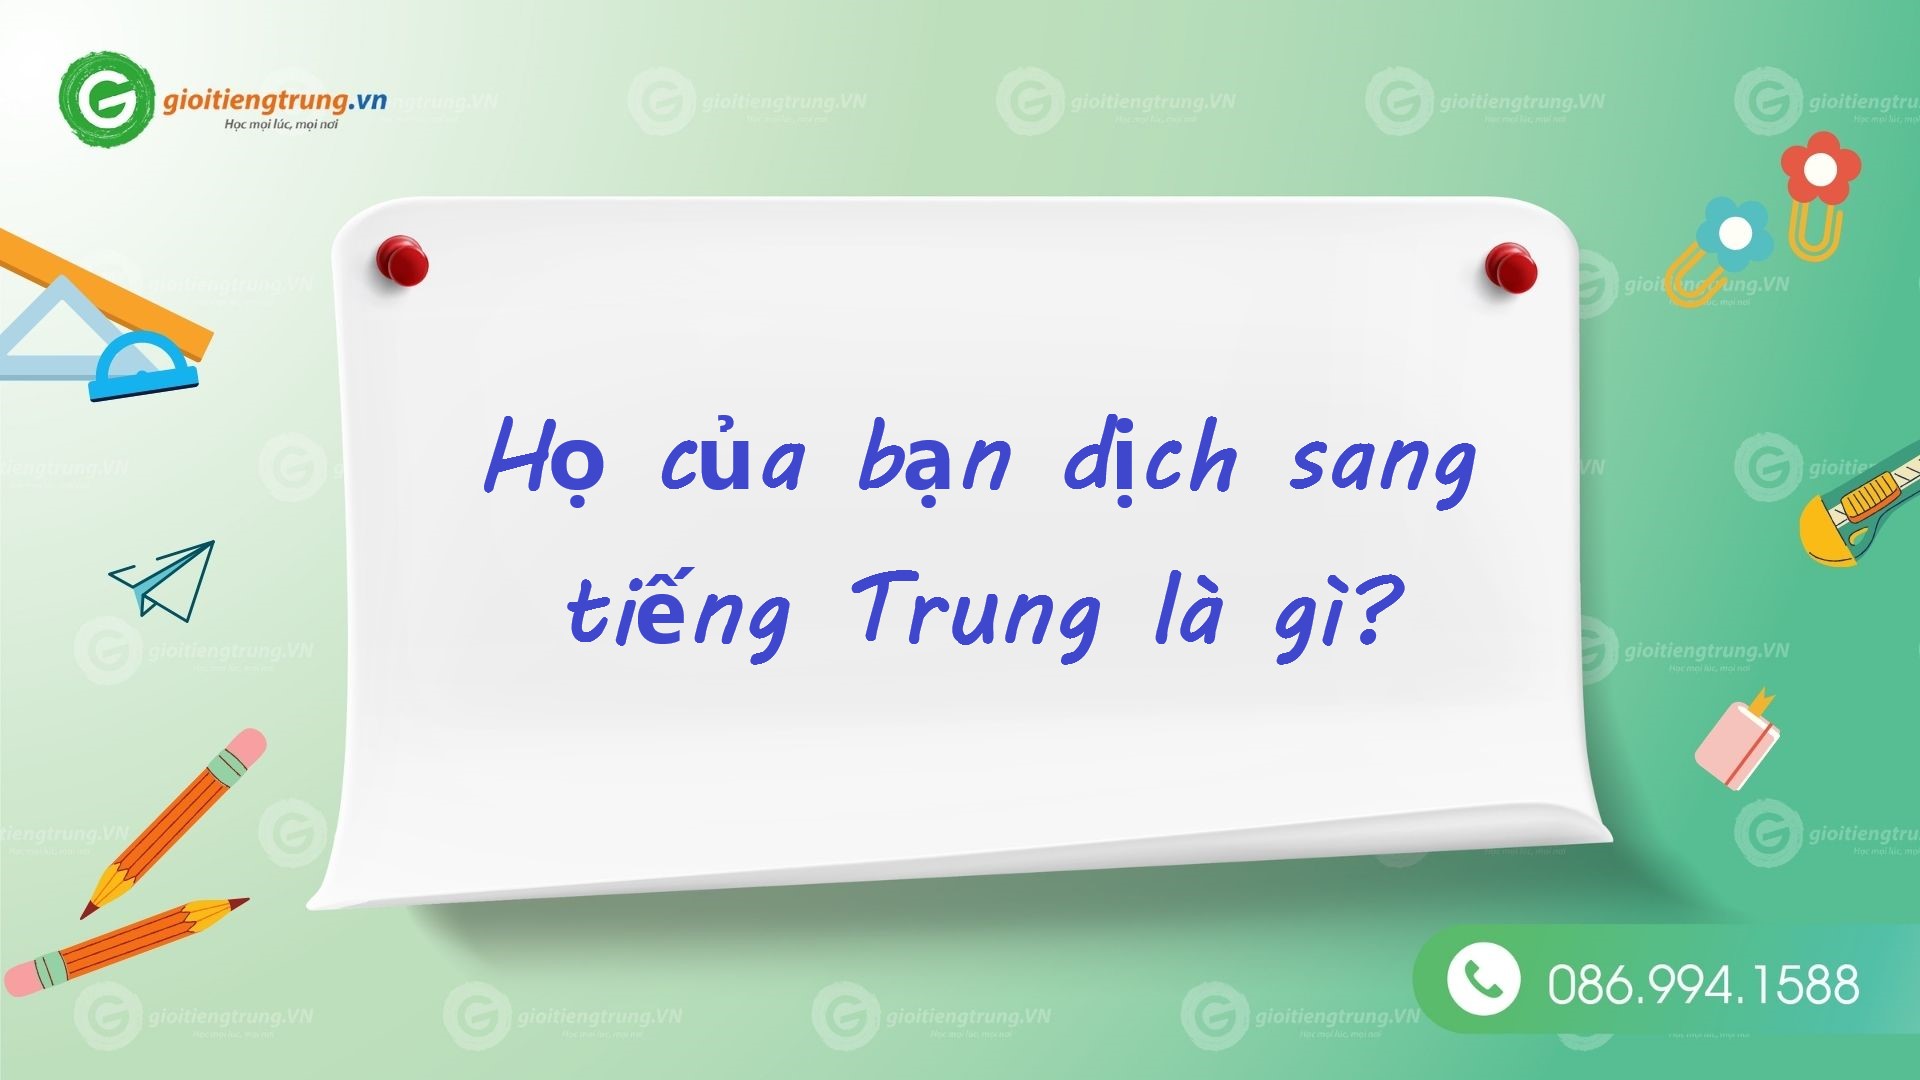 Dịch họ tên tiếng Việt sang tiếng Trung